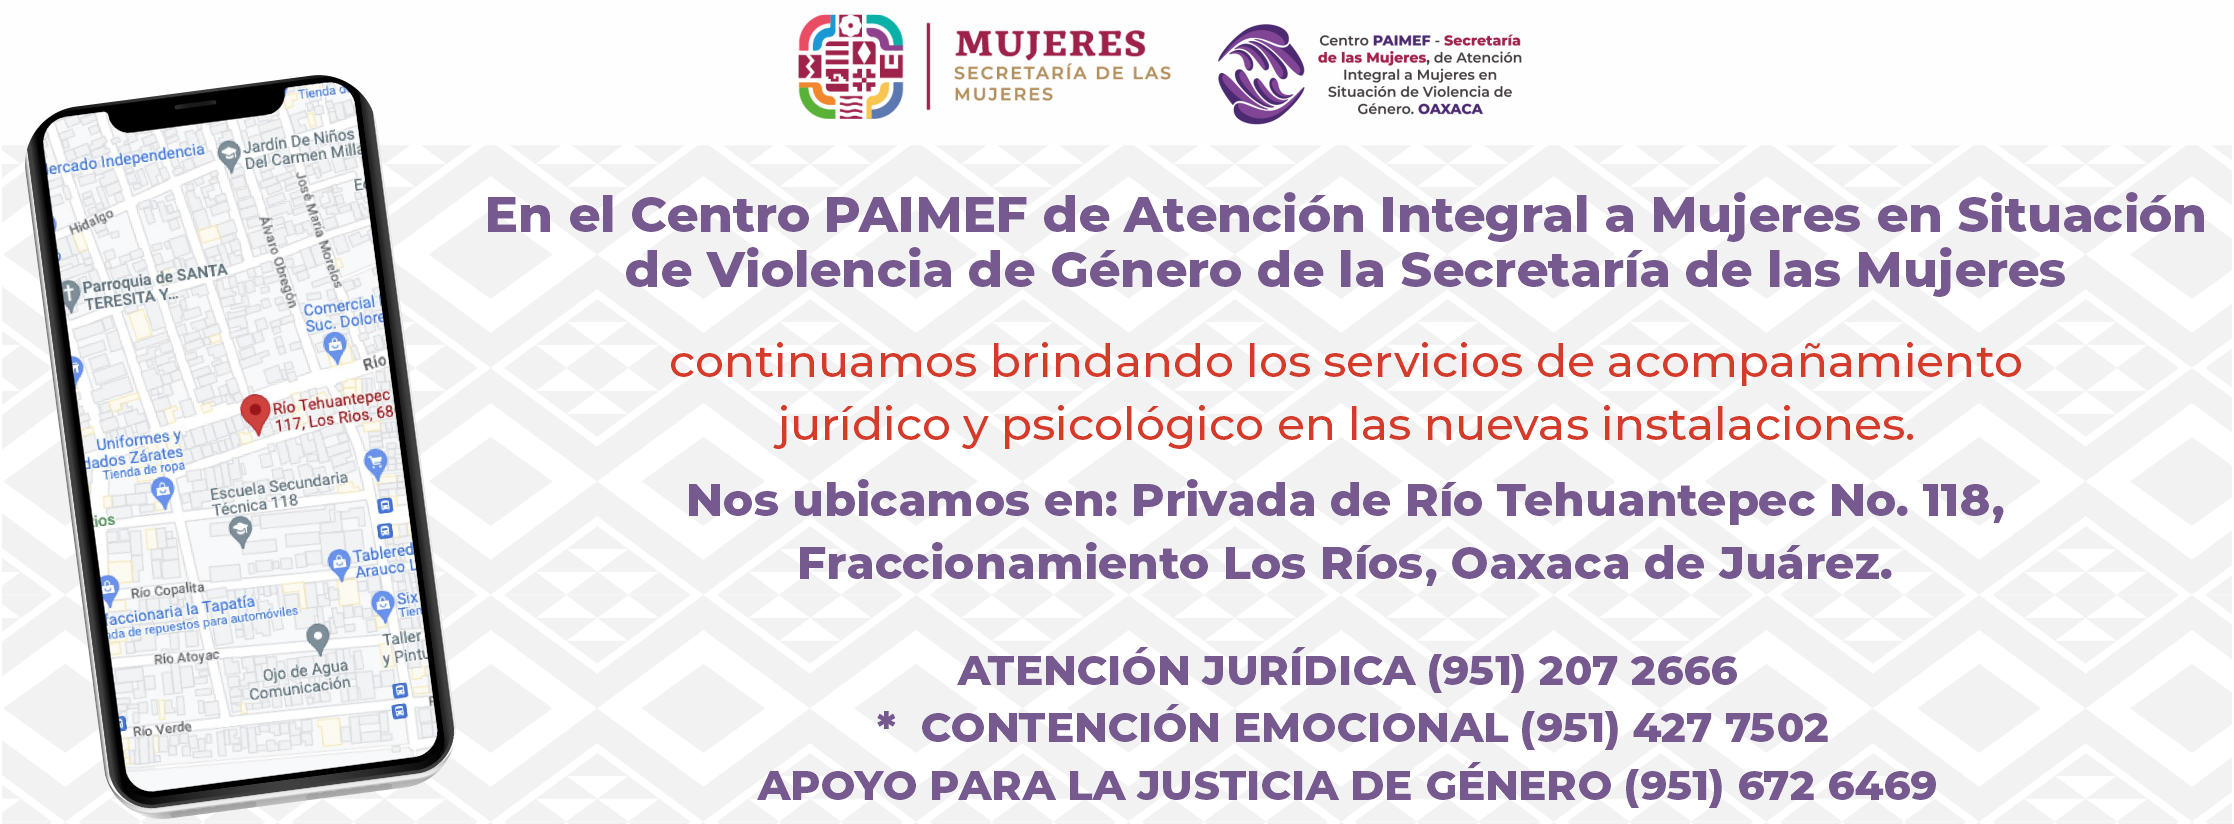 Centro PAIMEF de Atención Integral a Mujeres en Situación de Violencia de Género de la Secretaría de las Mujeres